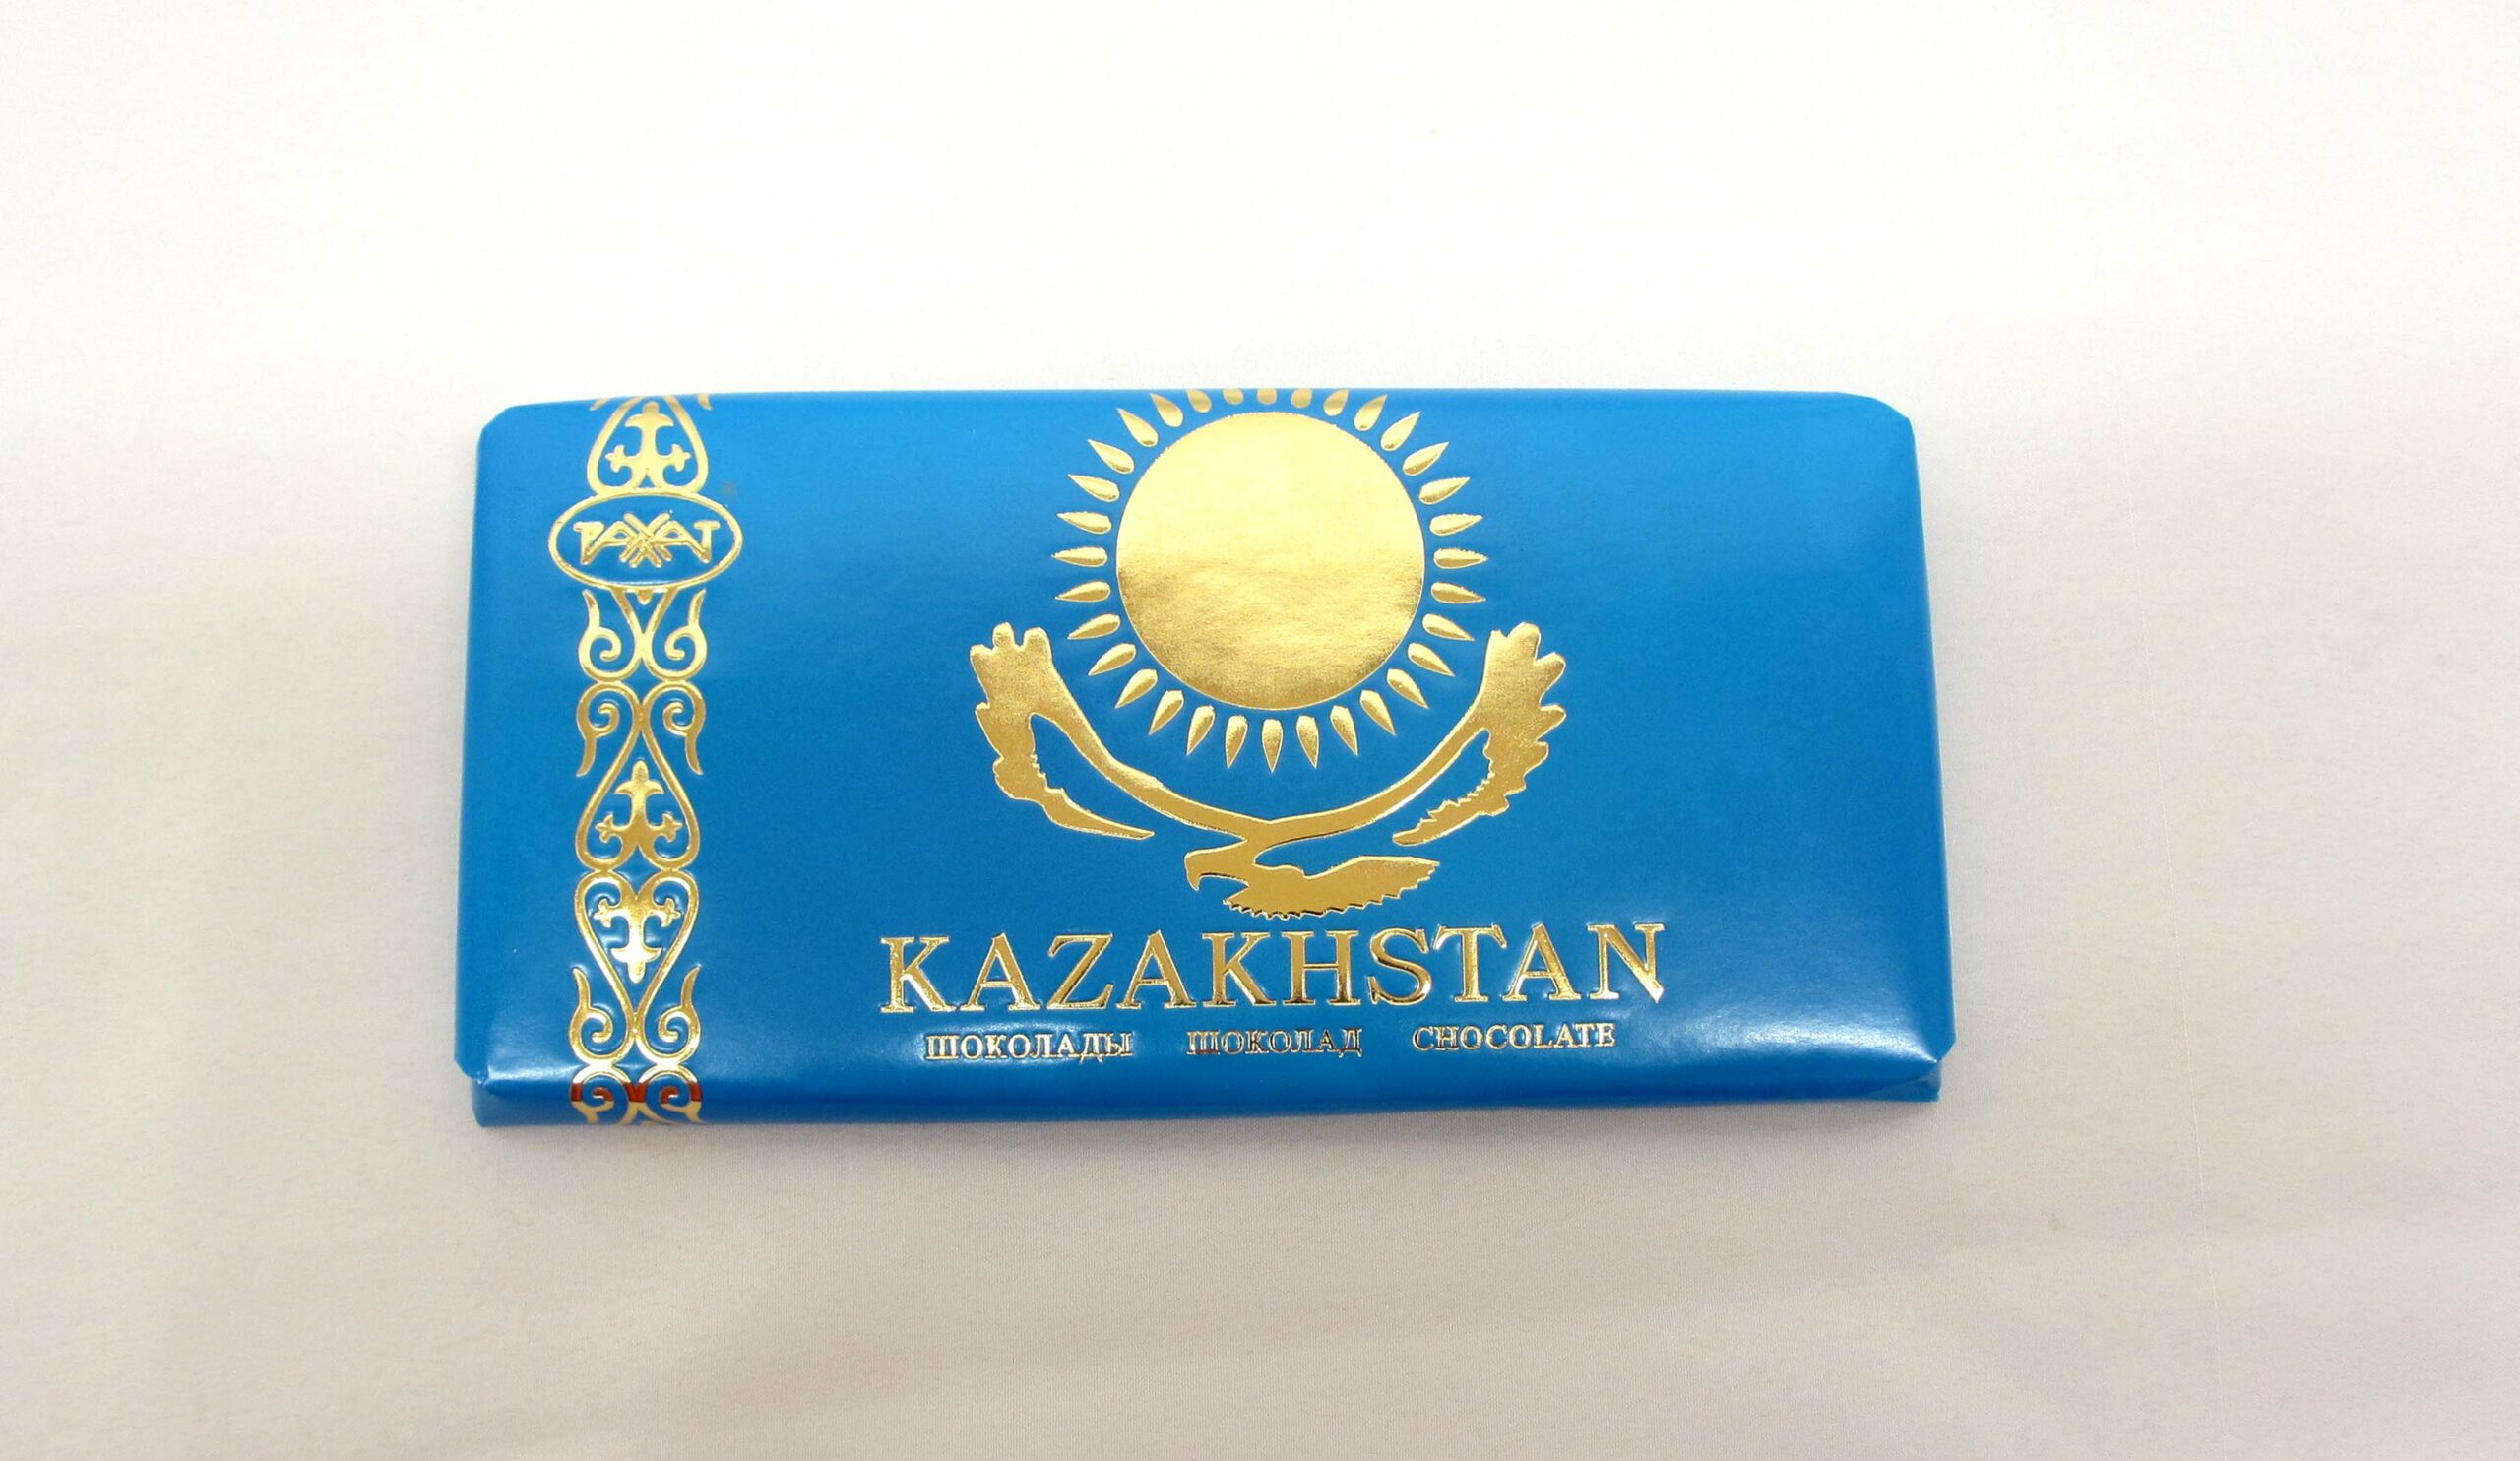 Производители шоколада “Казахстанский” сняли саркастическую рекламу о россиянах